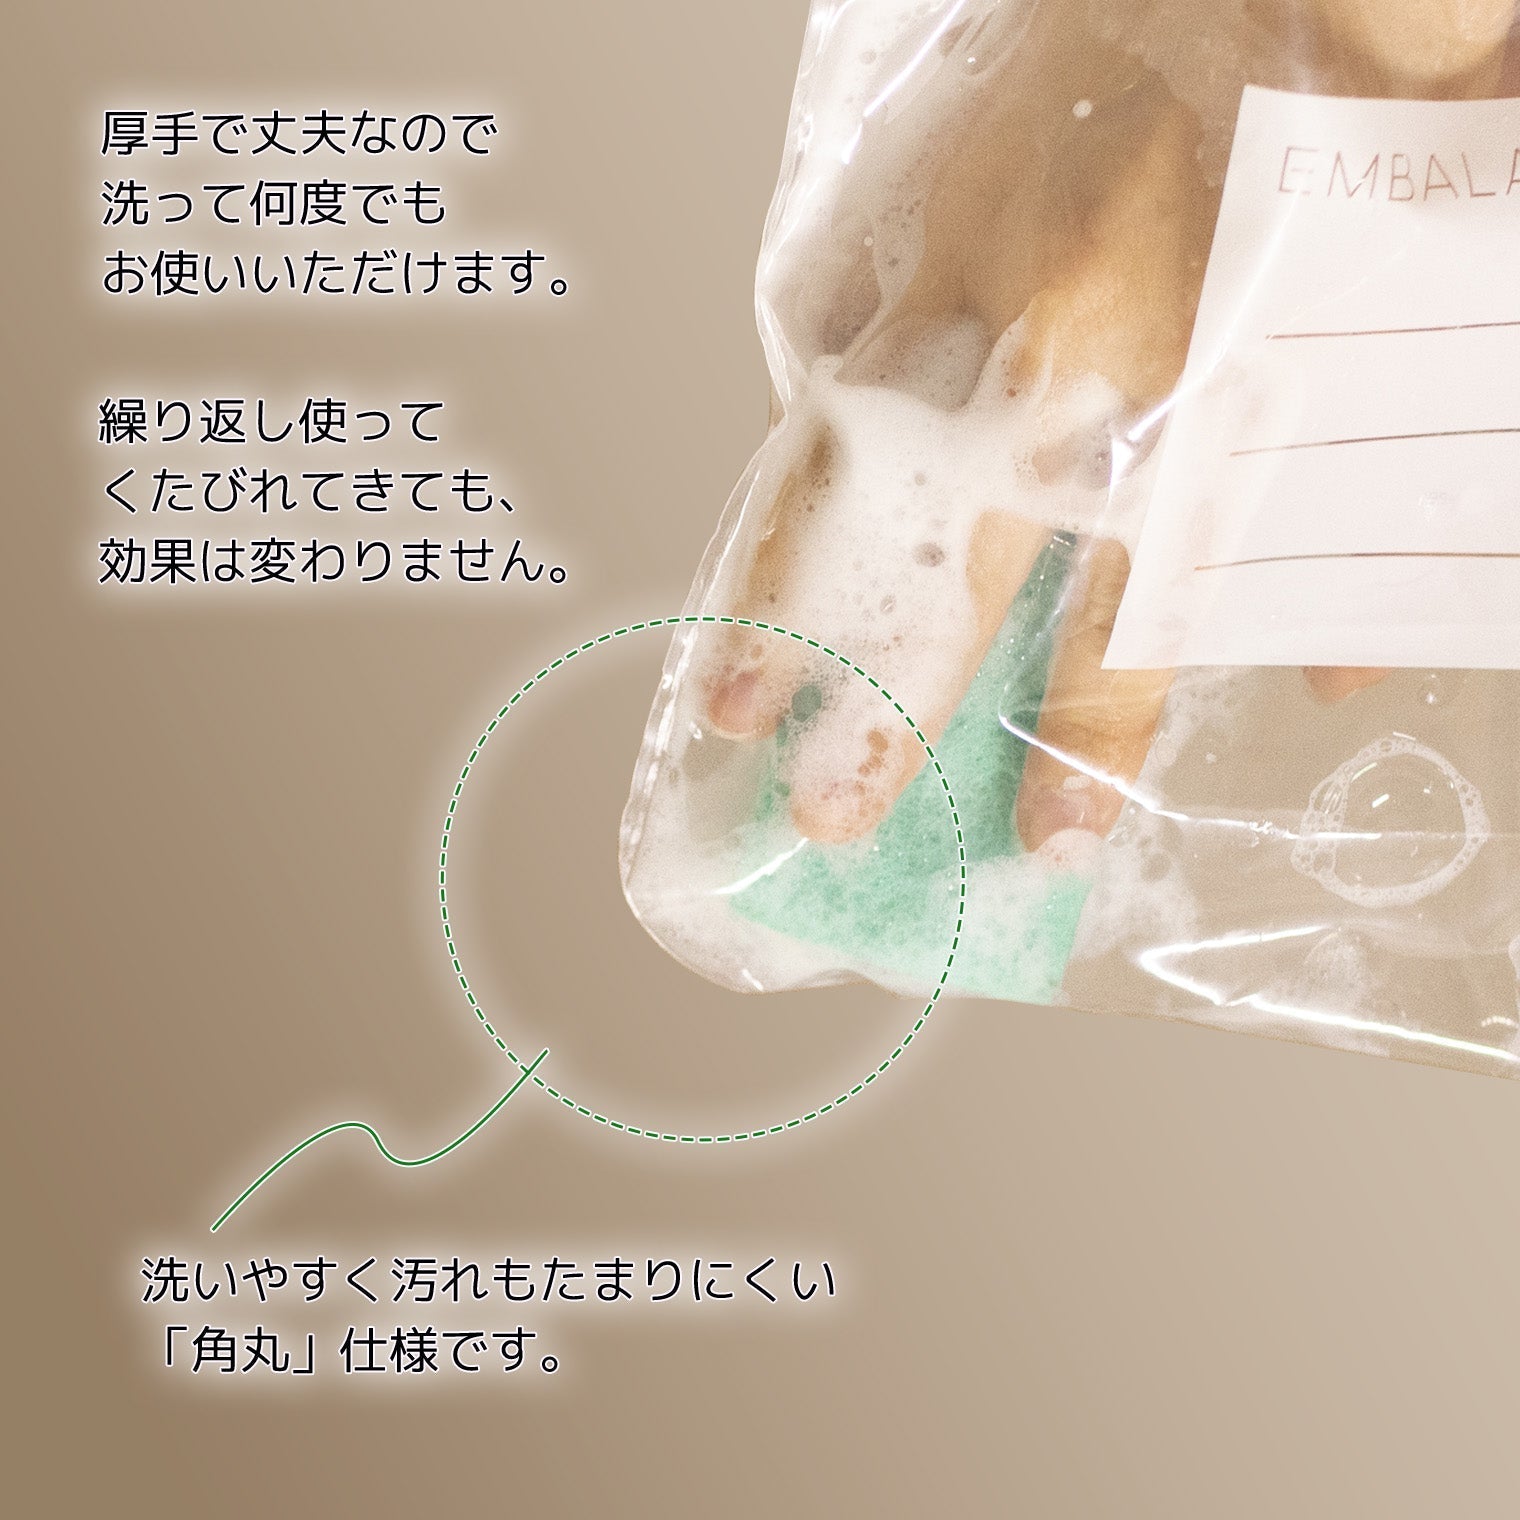 エンバランス 新鮮チャック袋 (Mワイドサイズ 18枚入り) 日本製 235×320mm